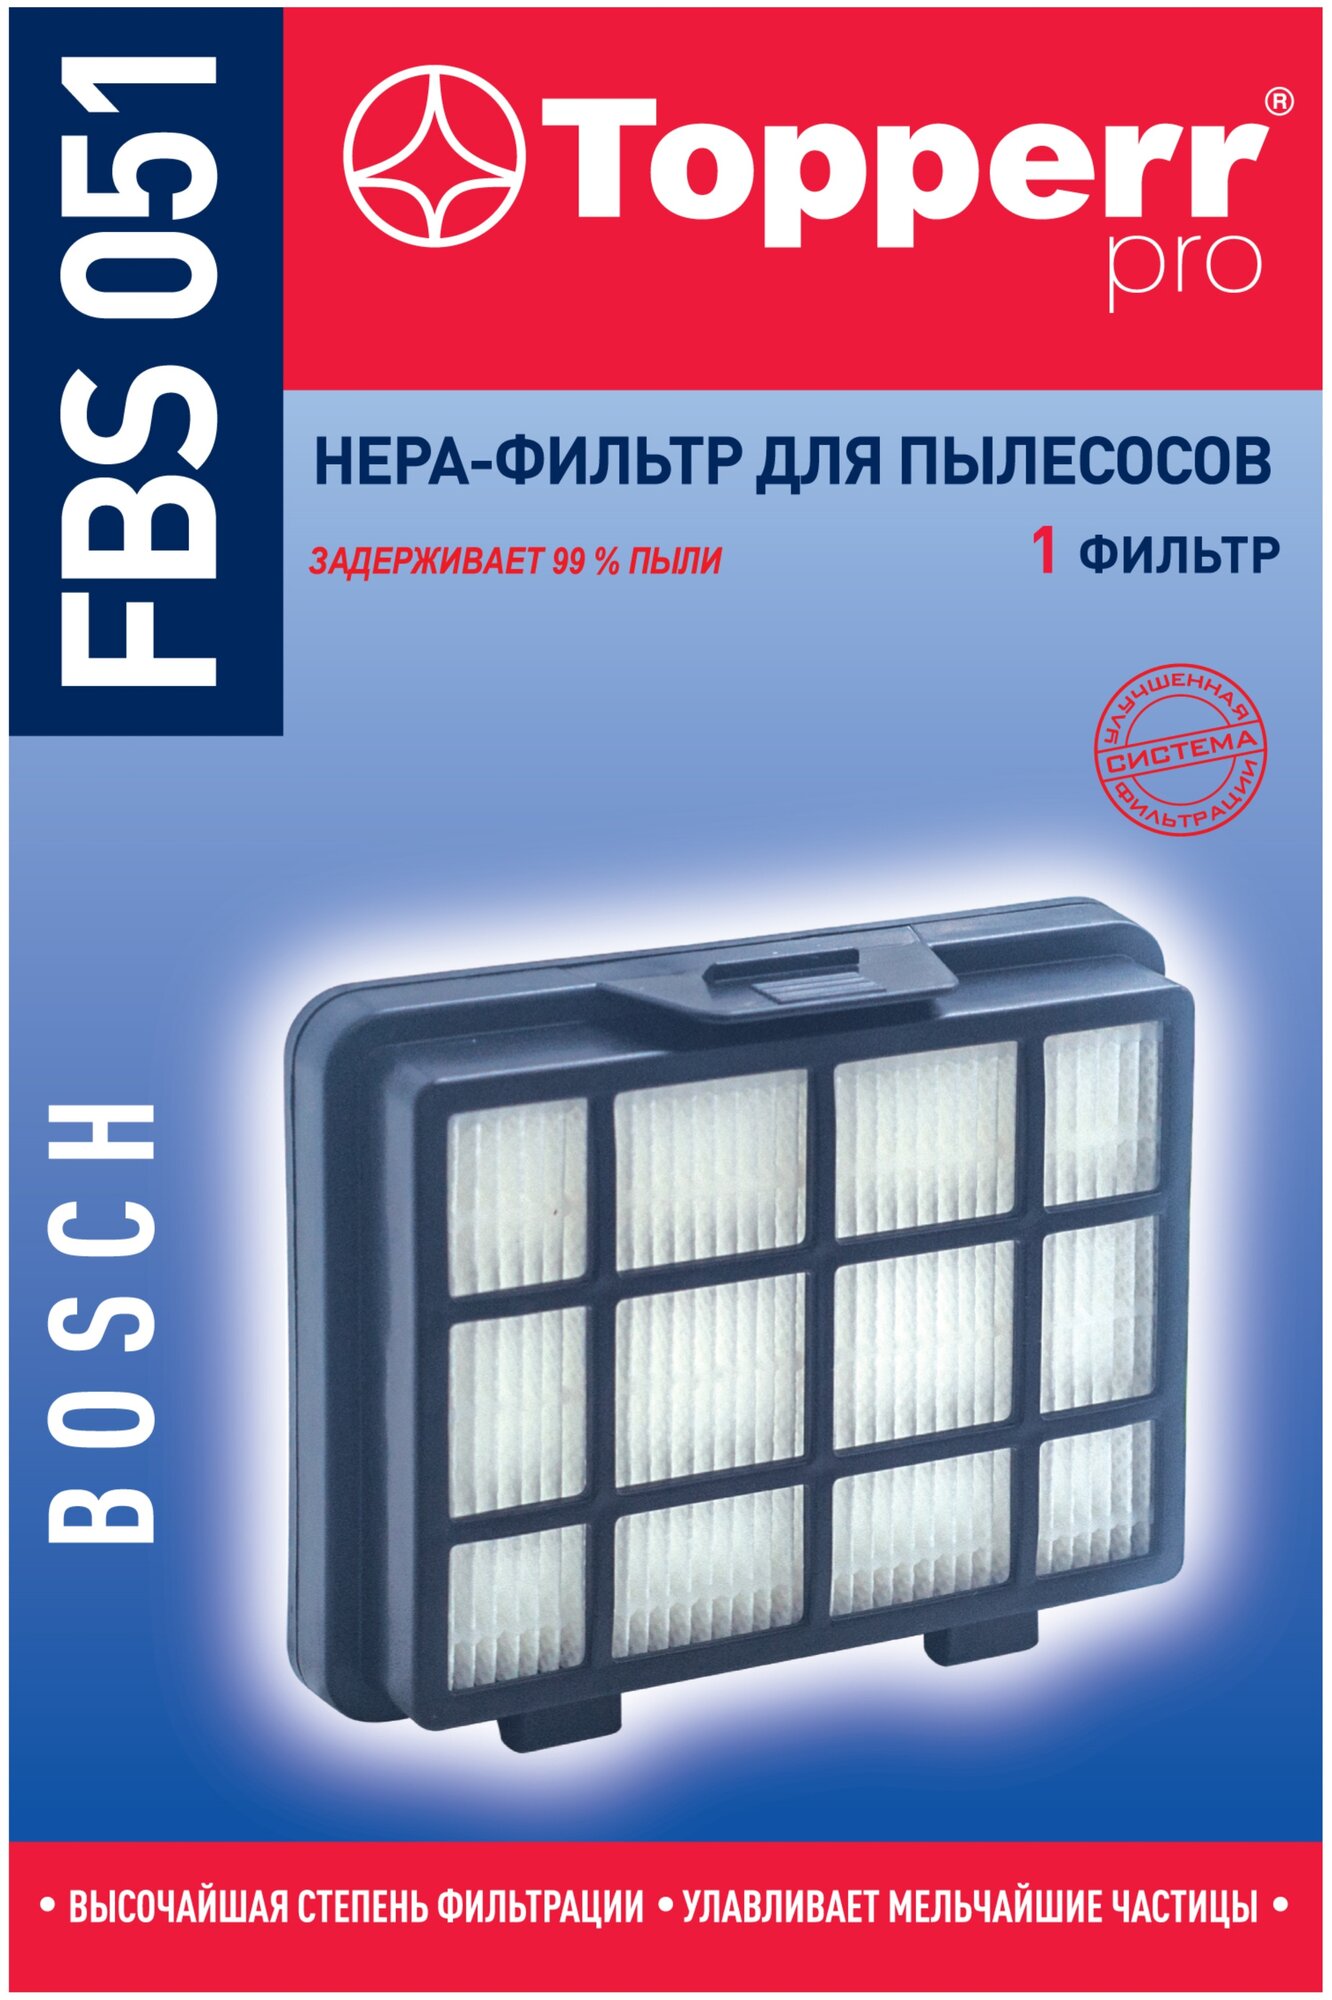 НЕРА-фильтр TOPPERR , для пылесосов Bosch, Данный фильтр подходит для следующих моделей пылесосов: Bosch Cleann’n BGS05A220, BGS05A221, BGS05A222. BGS05A225, BGC05AAA1, BGC05AAA2, BGC05A220A. Serie 2 - фото №4